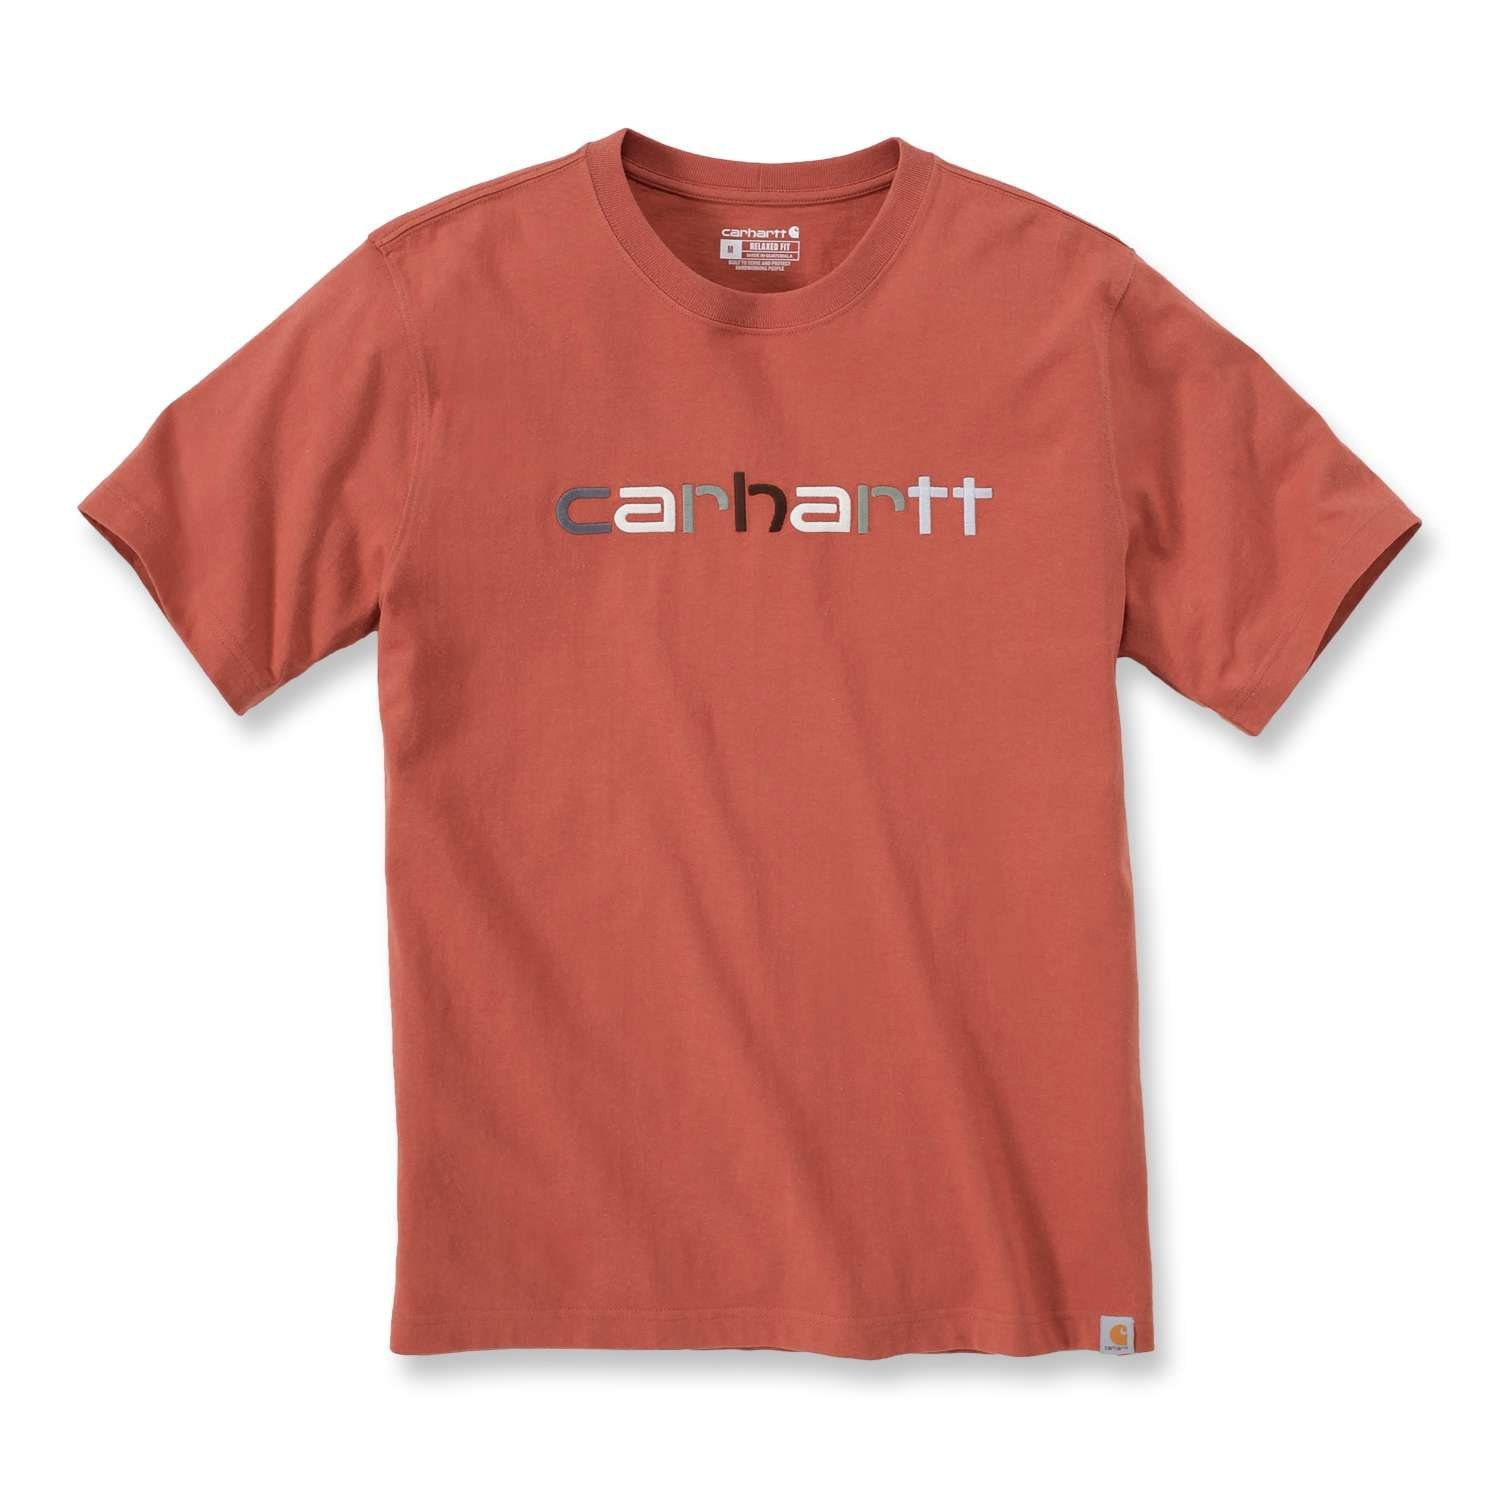 Carhartt T-Shirt Carhartt Herren T-Shirt S/S terracotta Graphic Heavyweight Adult